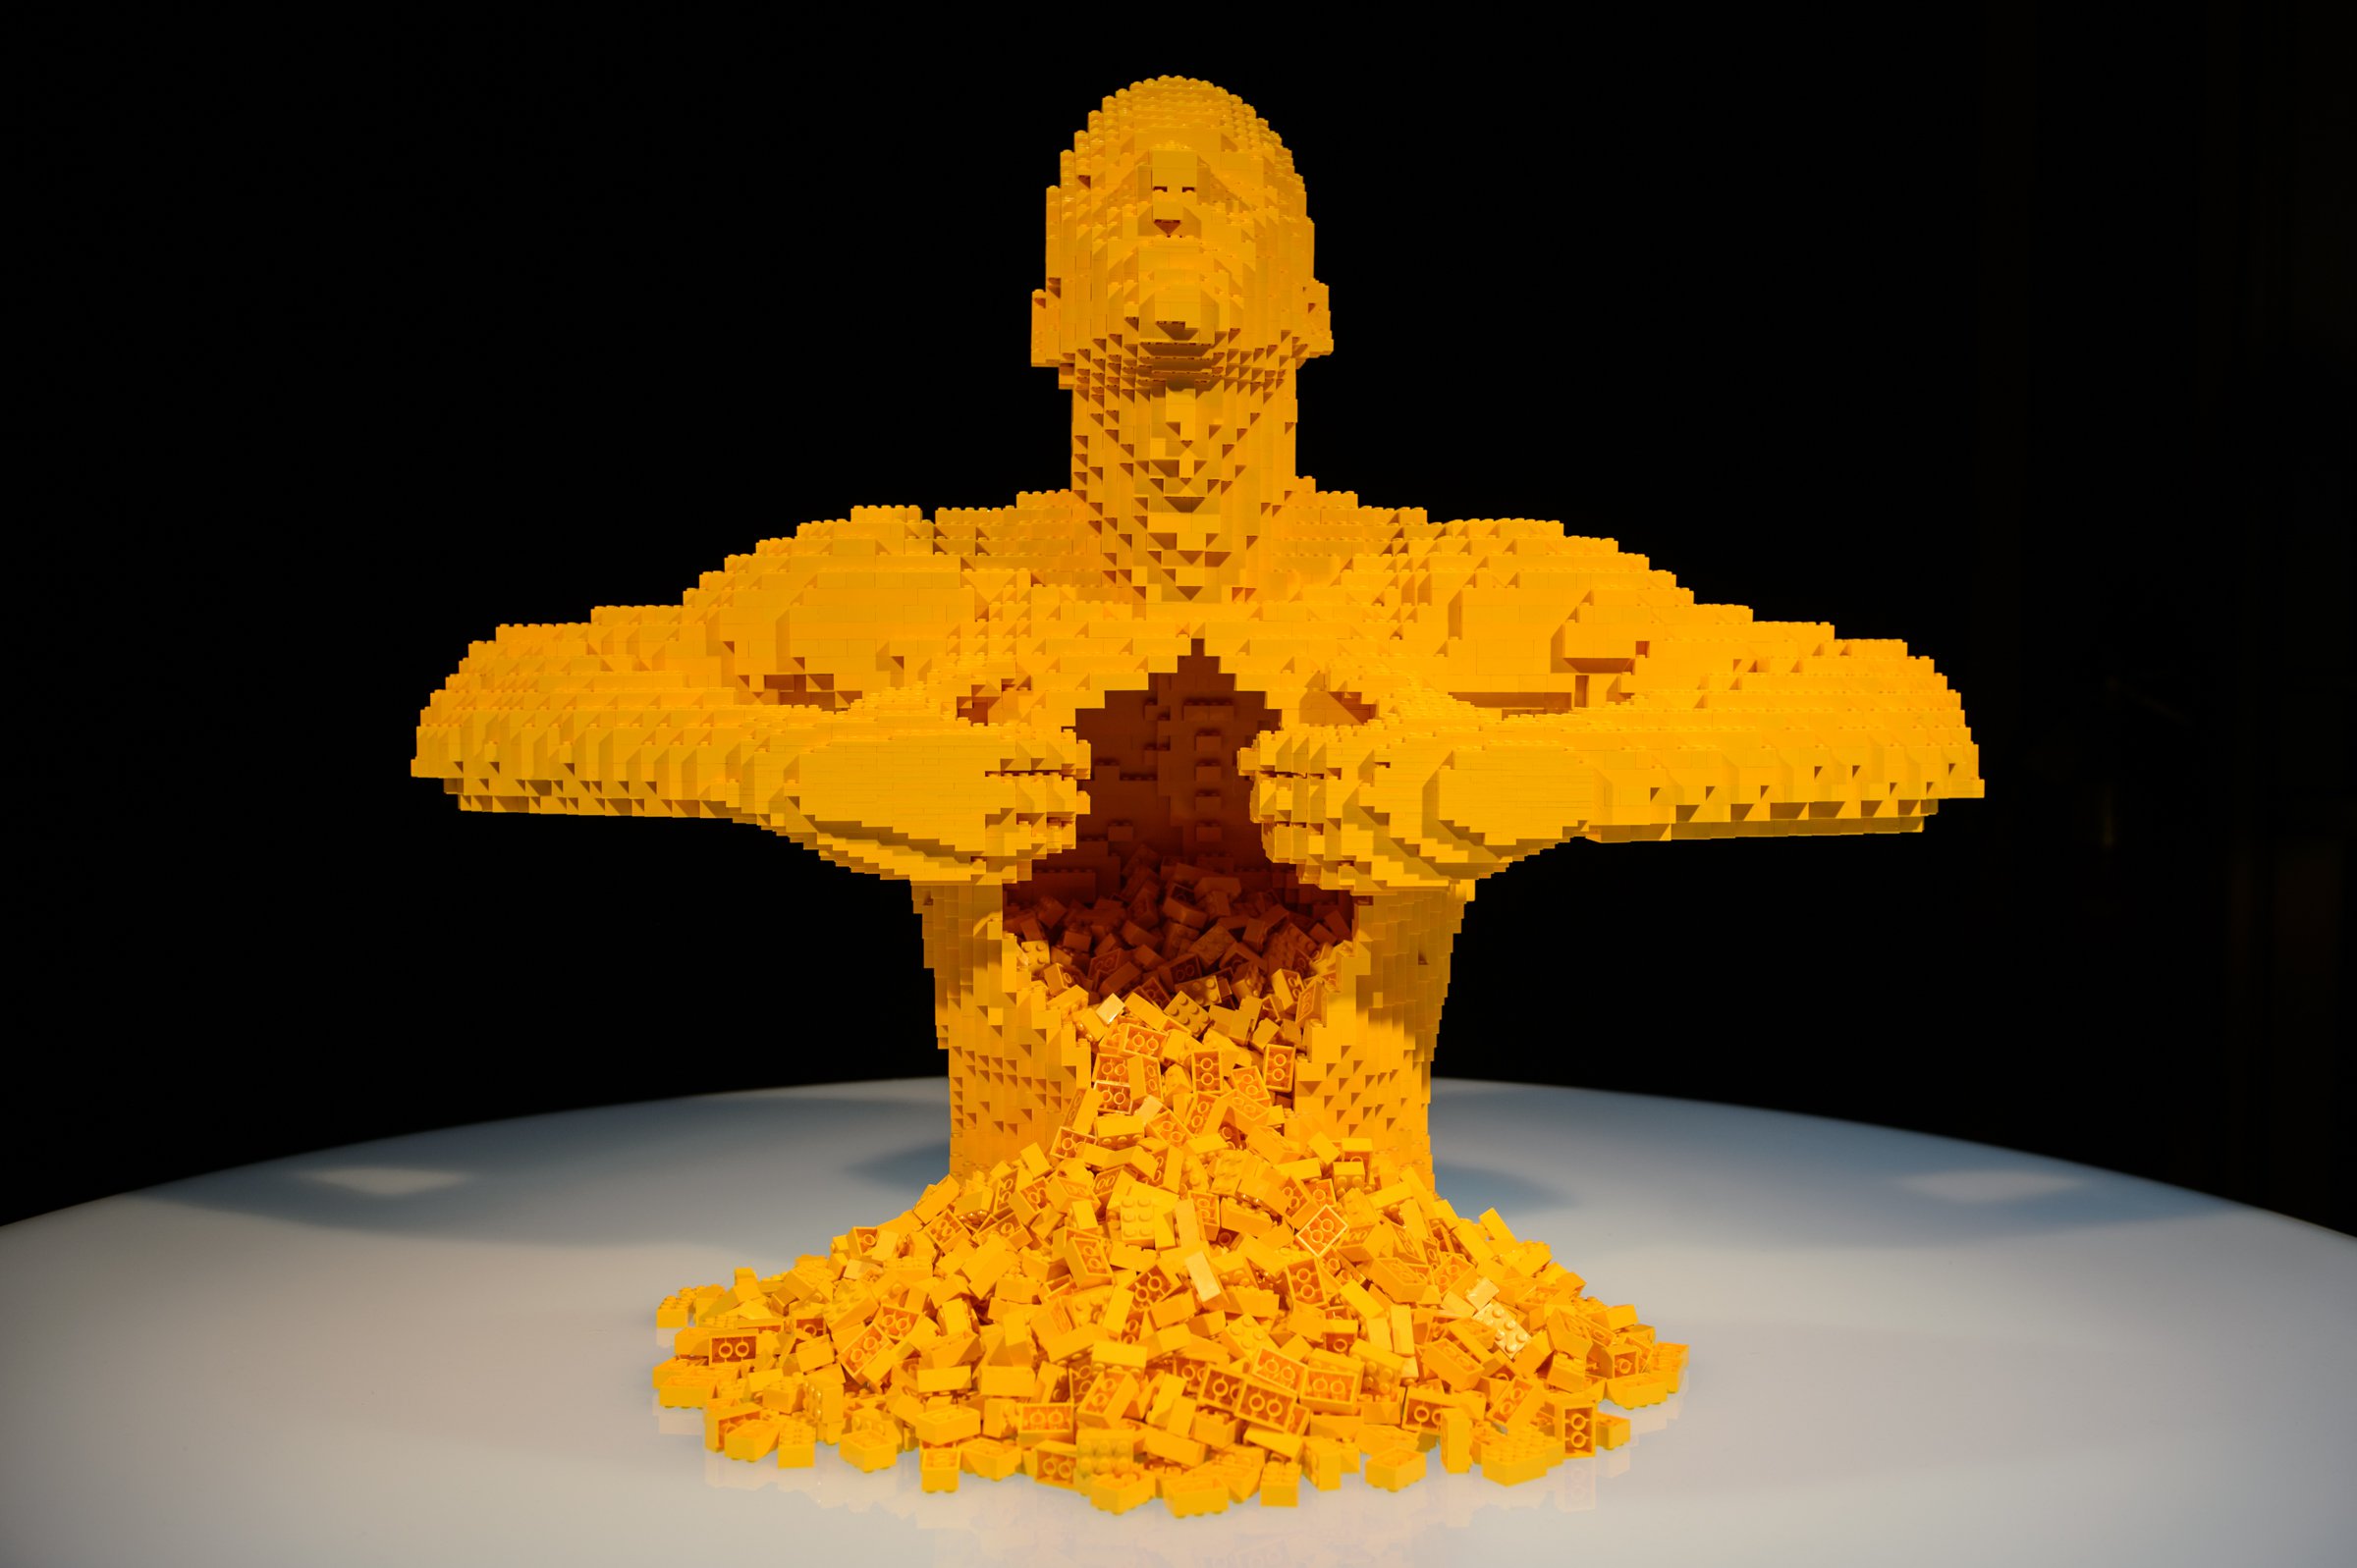 Exposição Com Esculturas Feitas de LEGO 2022 – Comprar Ingressos